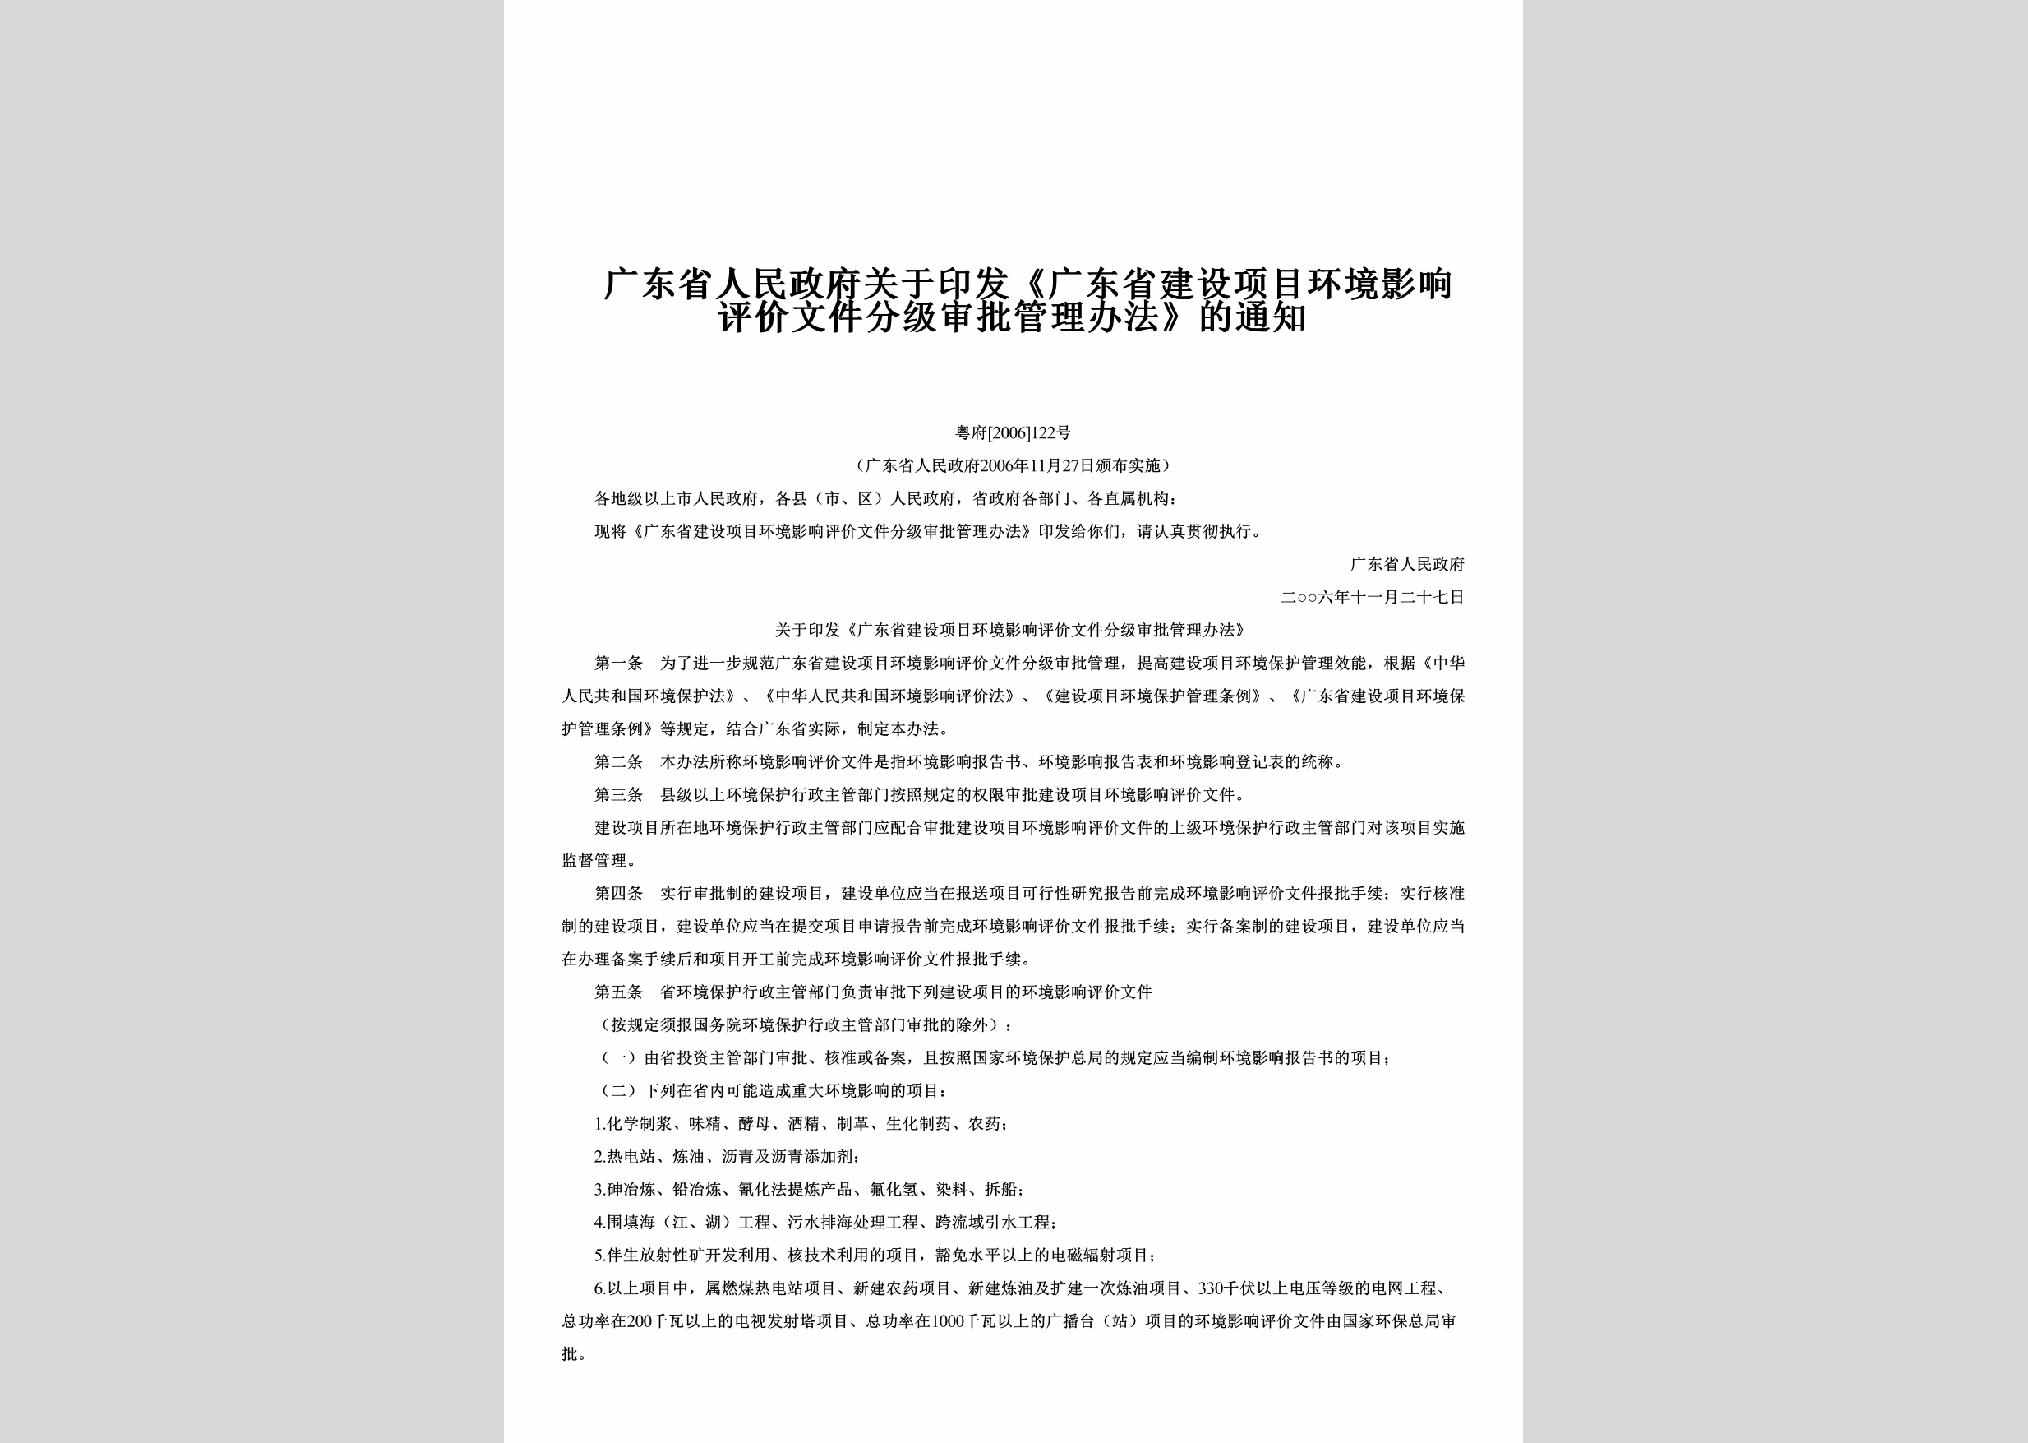 粤府[2006]122号：关于印发《广东省建设项目环境影响评价文件分级审批管理办法》的通知